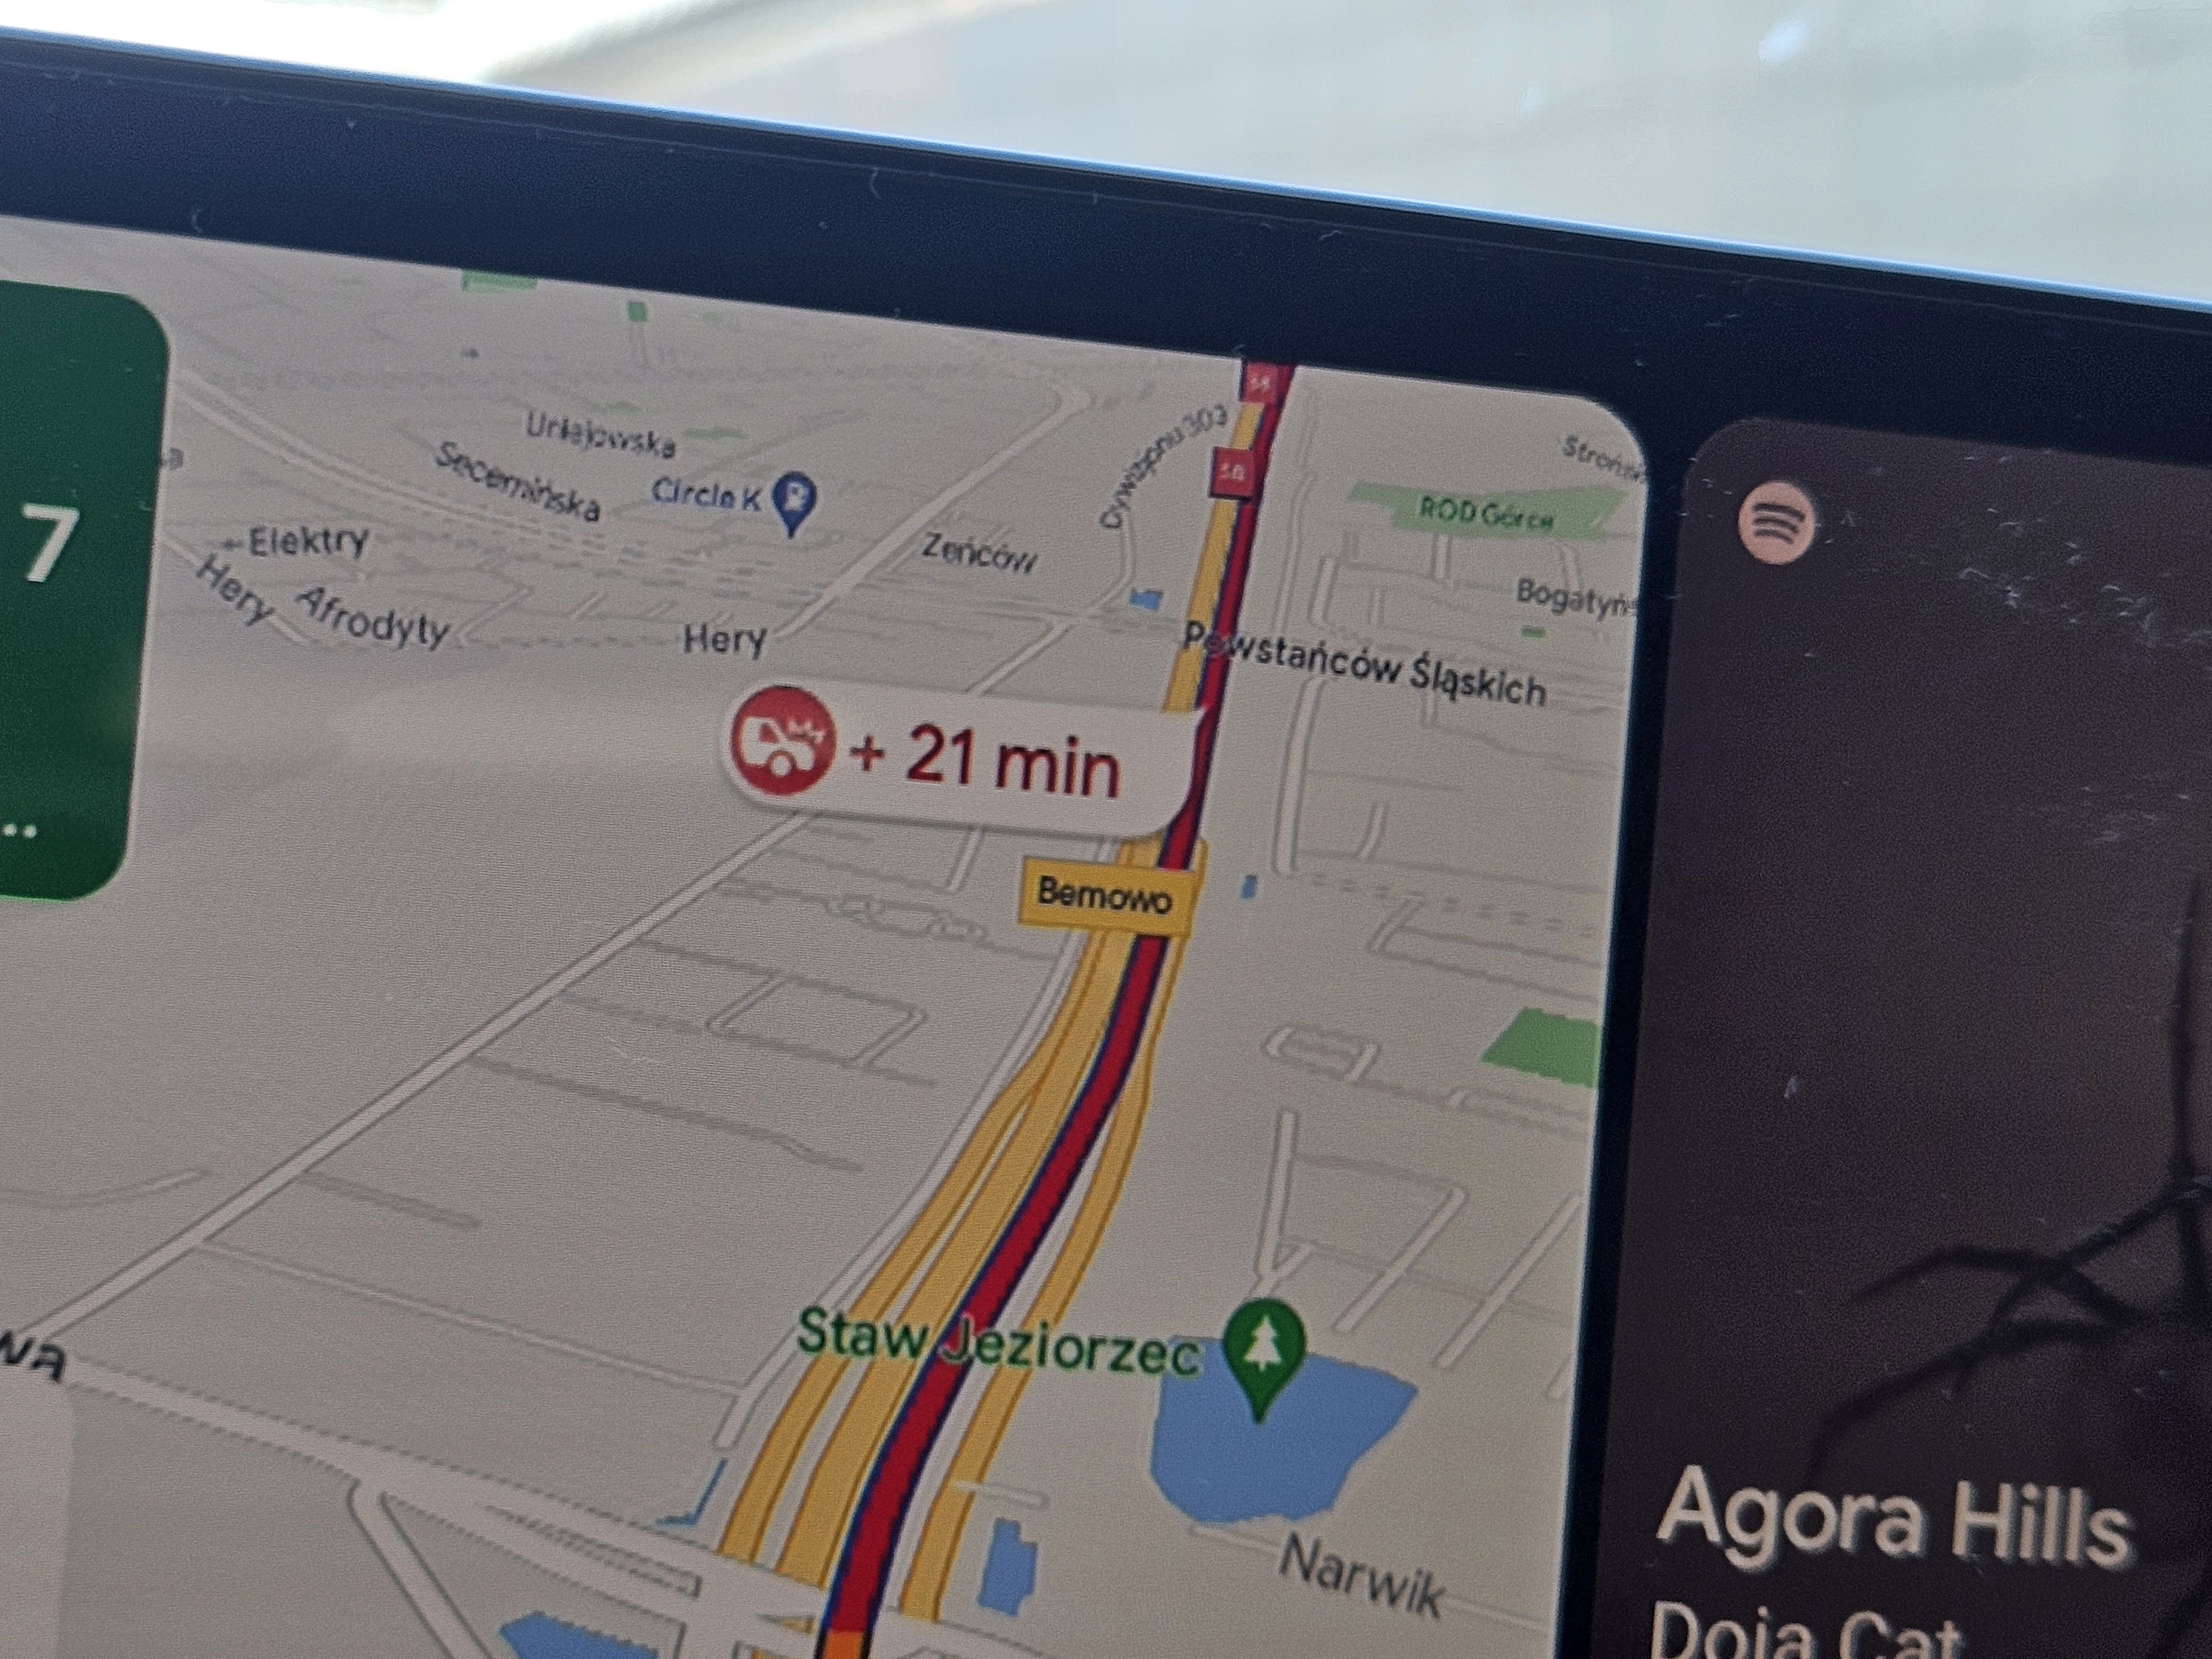 nowość w google maps. zamiast autem dotrzesz na miejsce rowerem lub autobusem